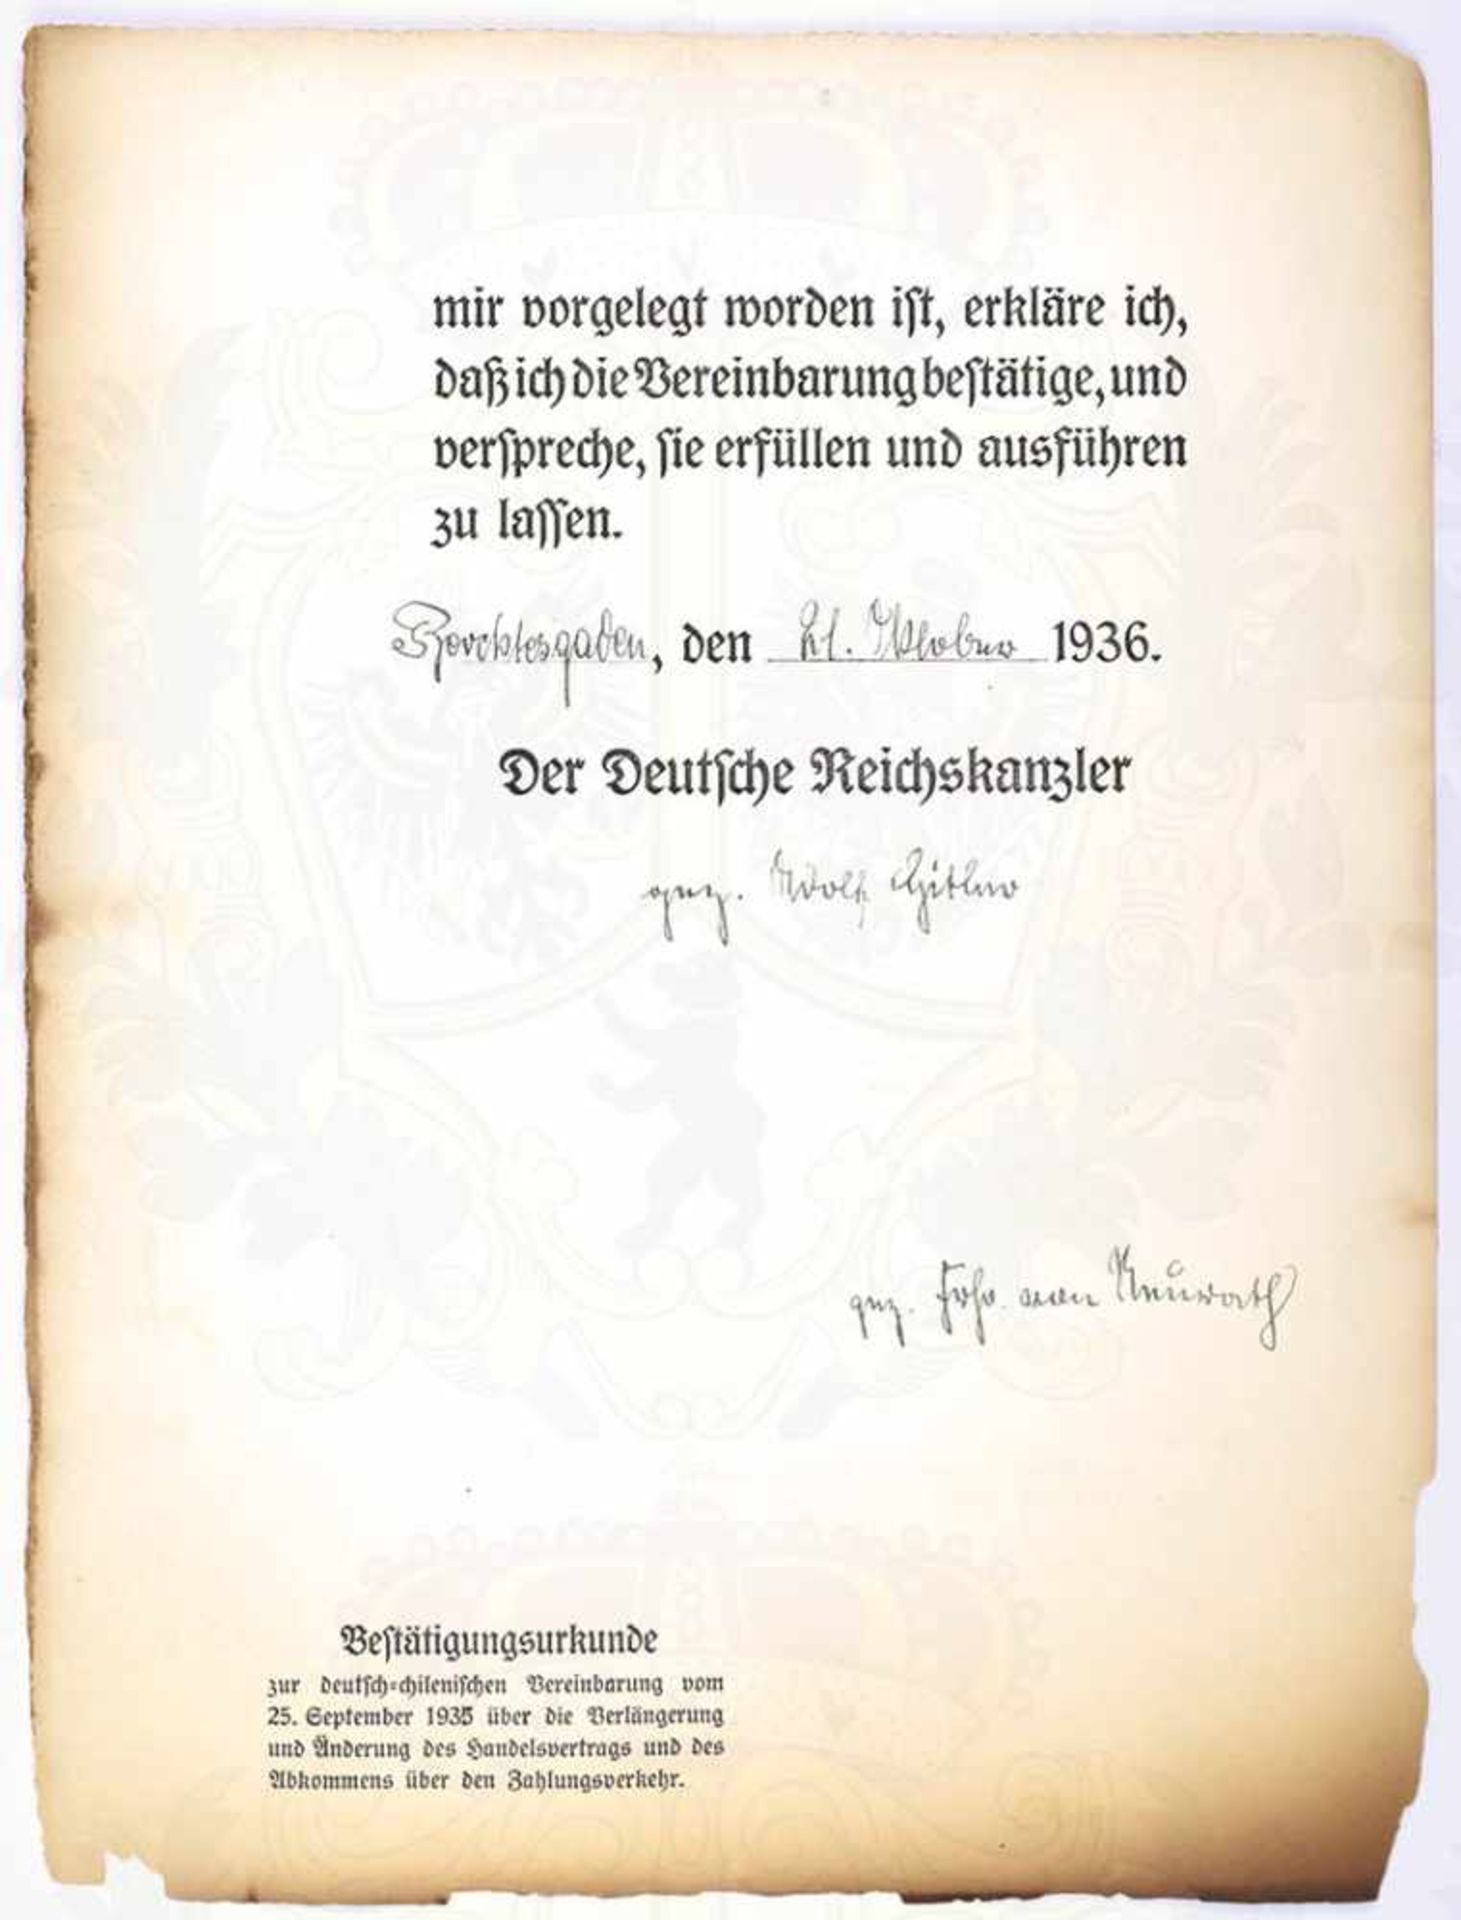 ADOLF HITLER, Bestätigungsurkunde zur deutsch-chilenischen Vereinbarung vom 25. September 1935